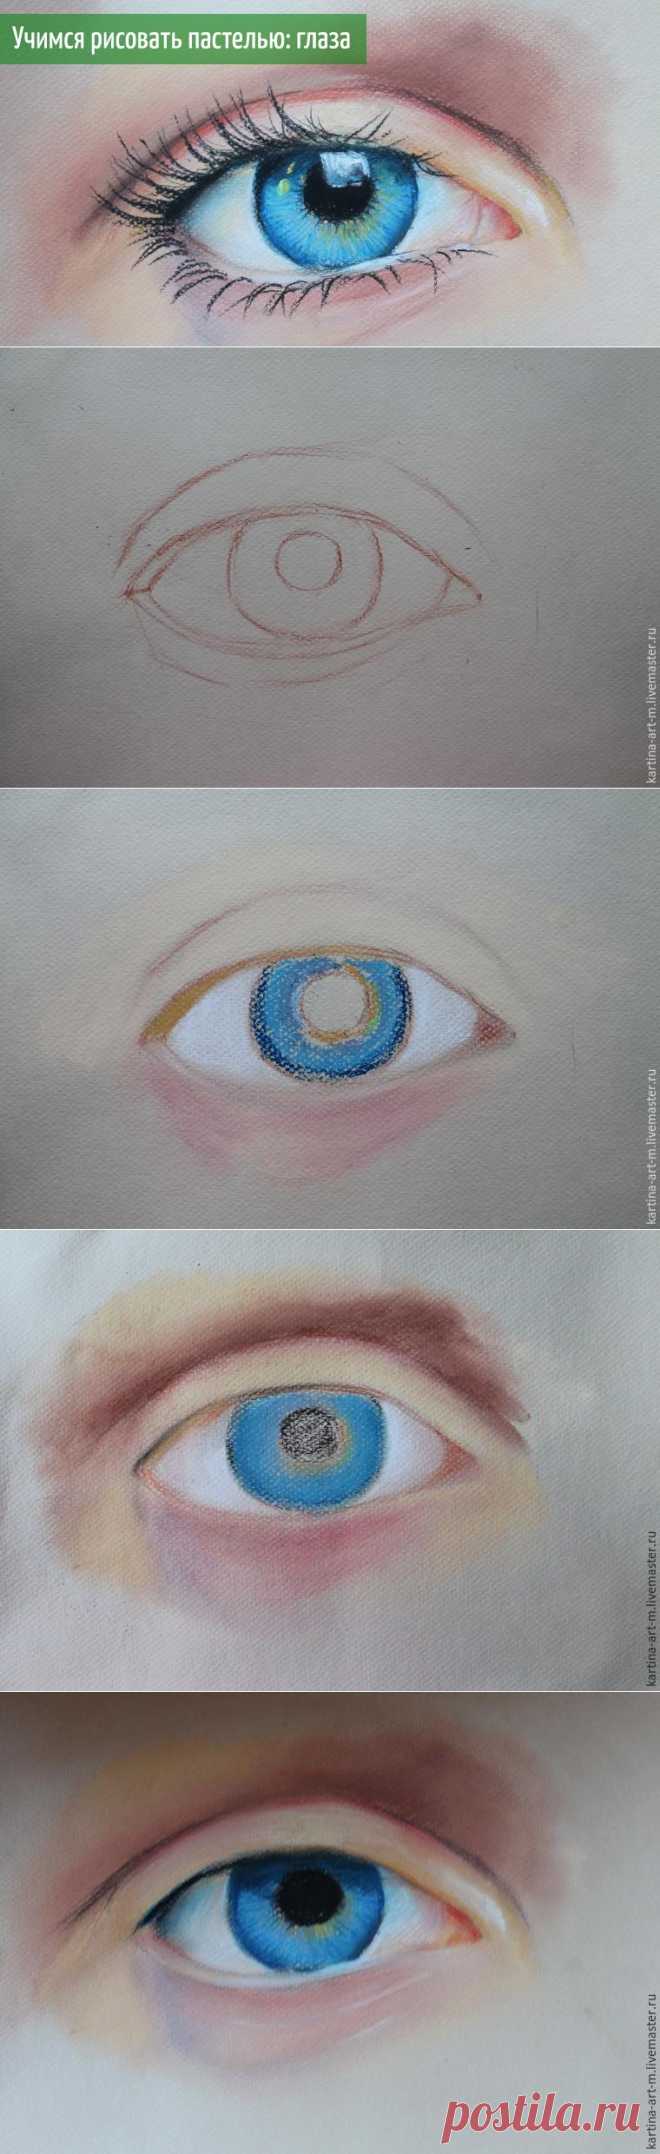 Рисуем глаз пастелью - Ярмарка Мастеров - ручная работа, handmade